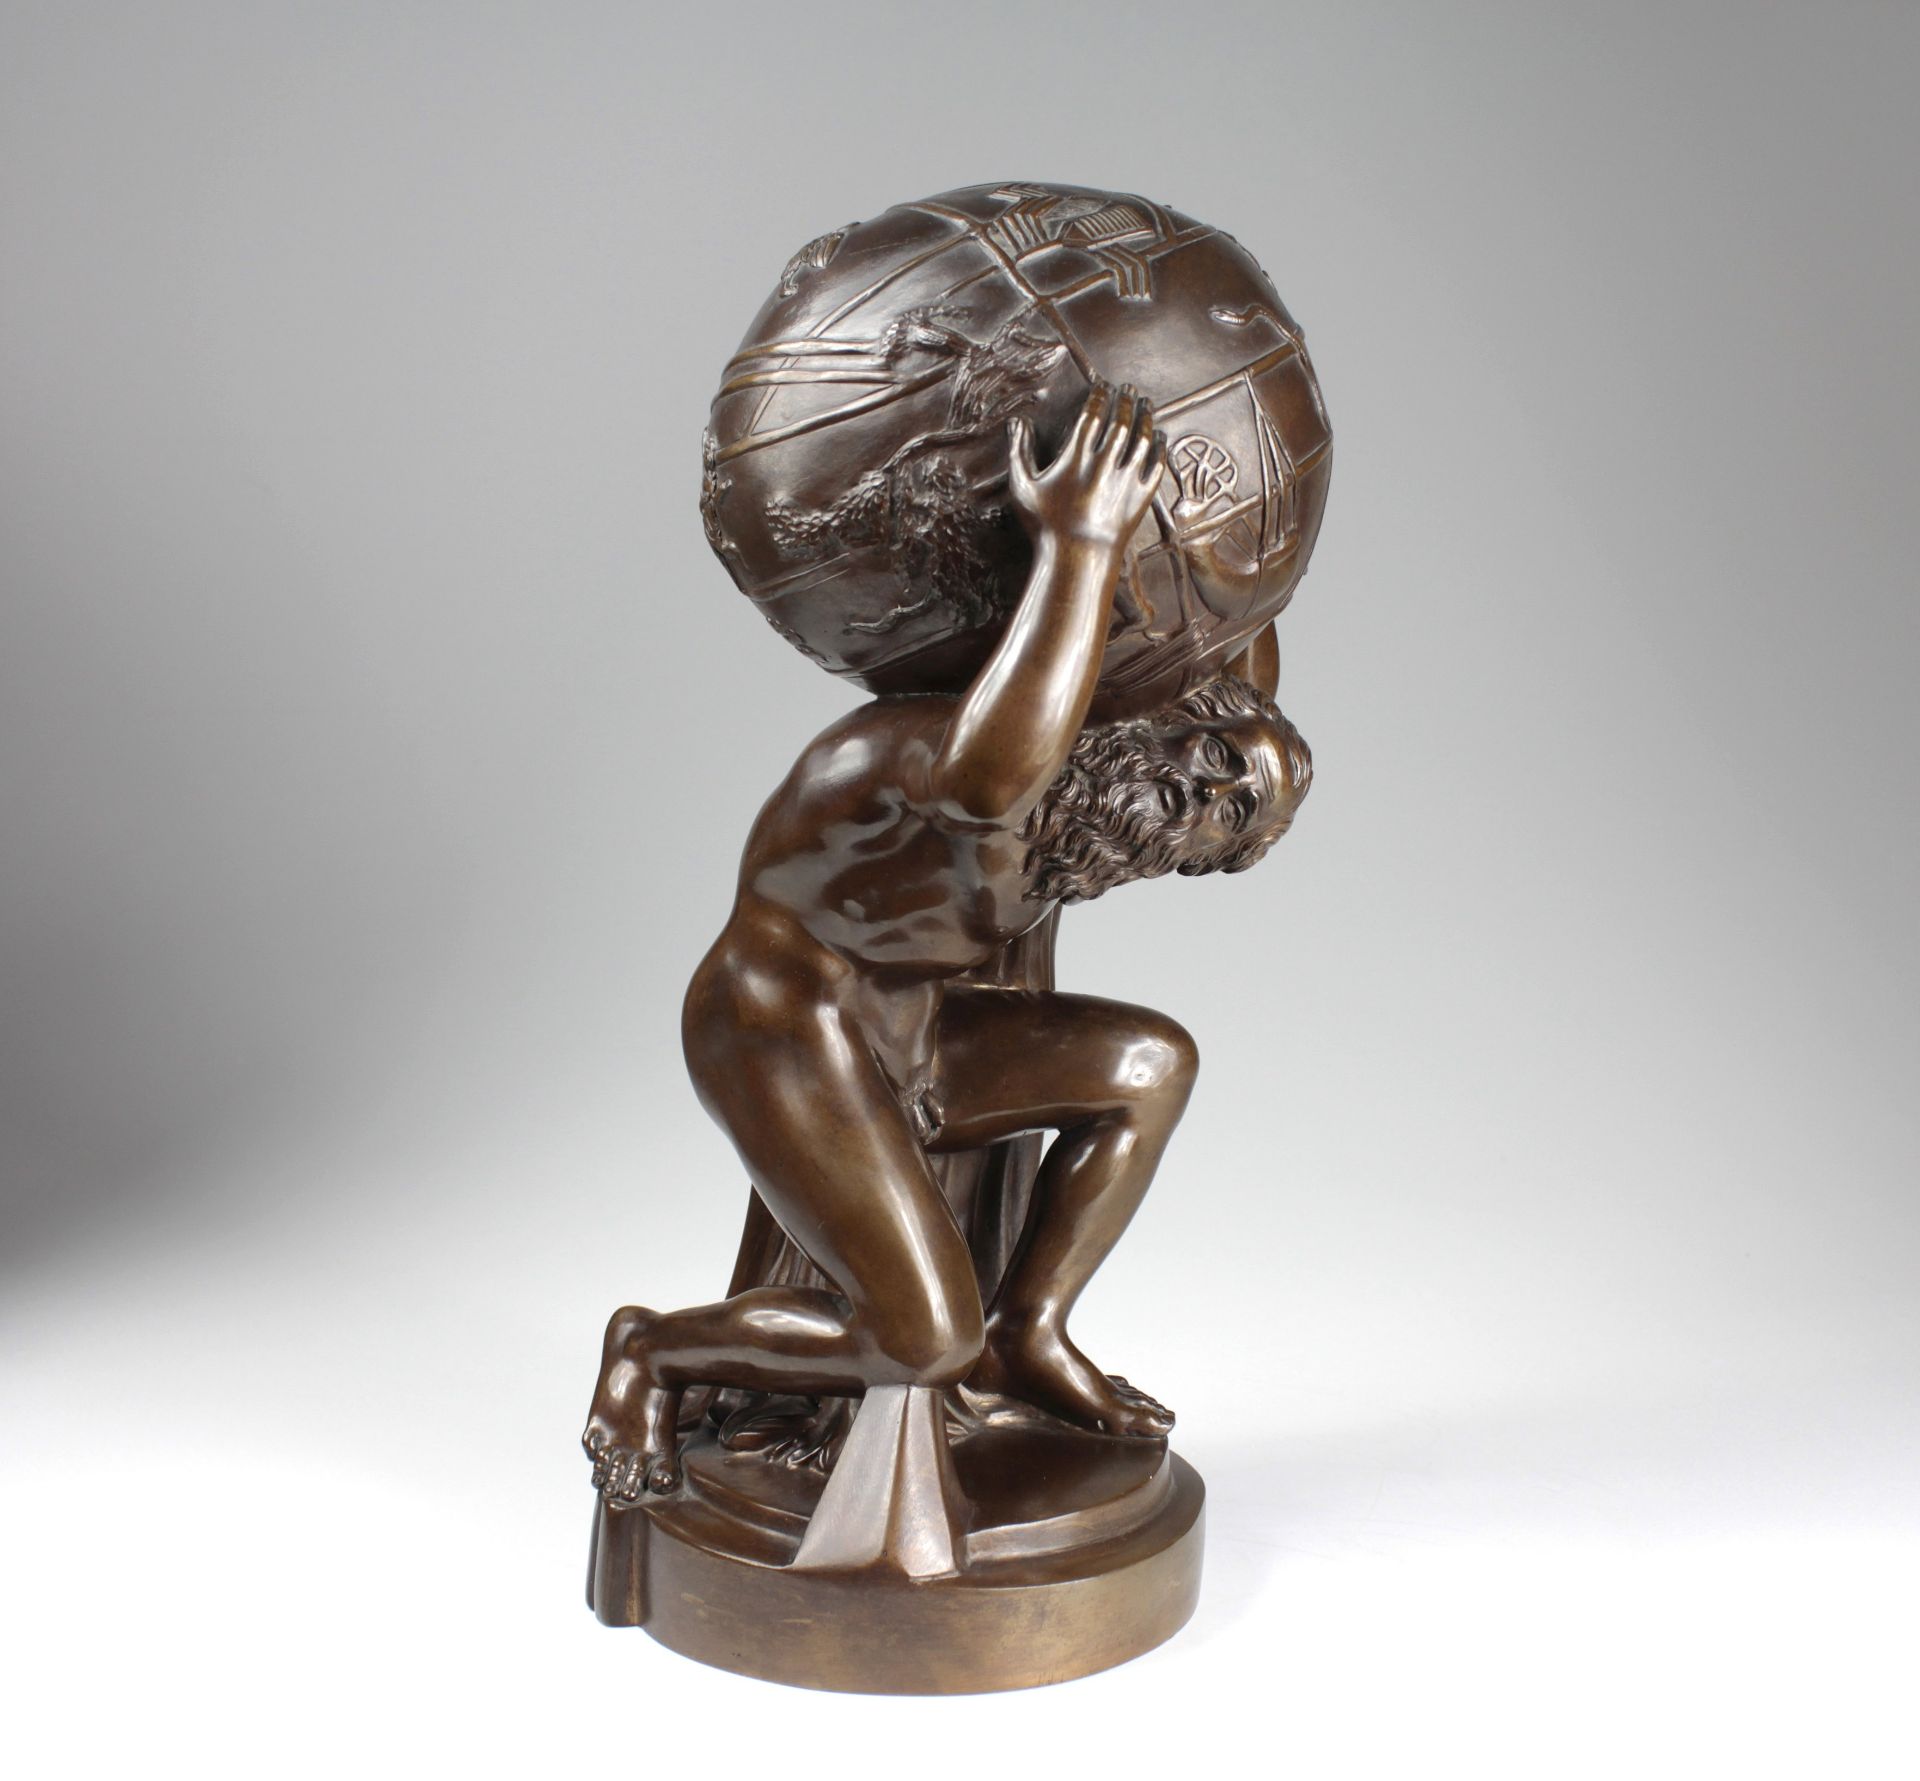 Seltenes Bronze-Modell nach der berühmten Skulptur des Atlas Farnese